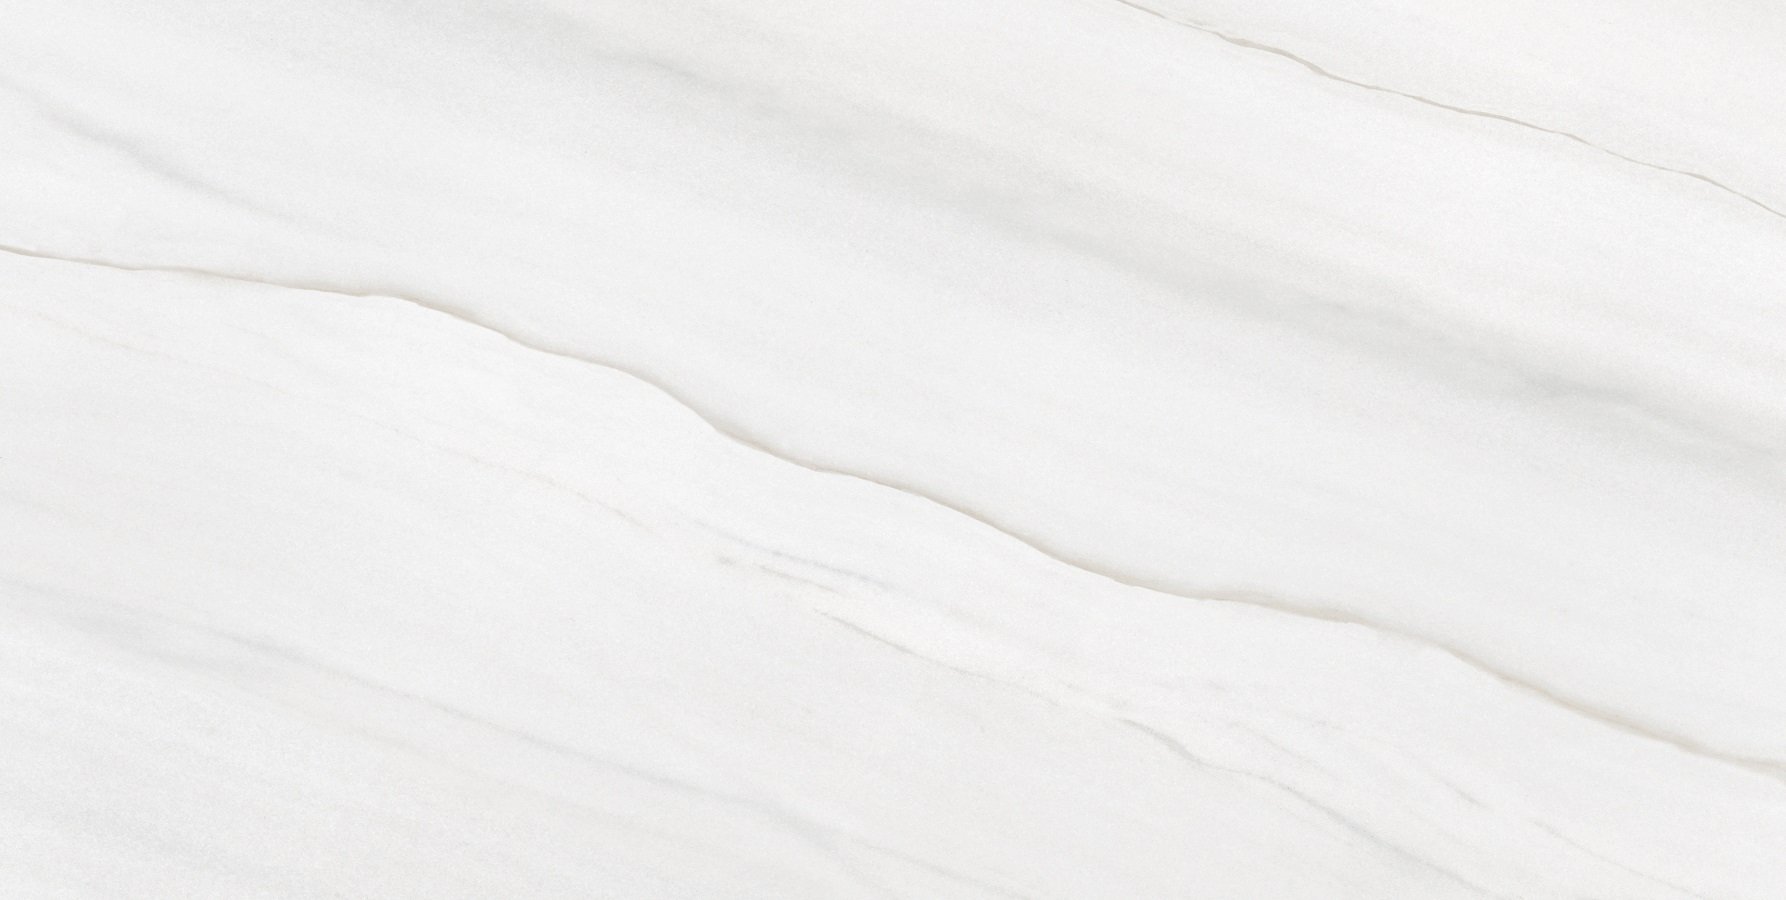 Fliese Marmoroptik weiß marmoriert glänzend rektifiziert Lasa blanco